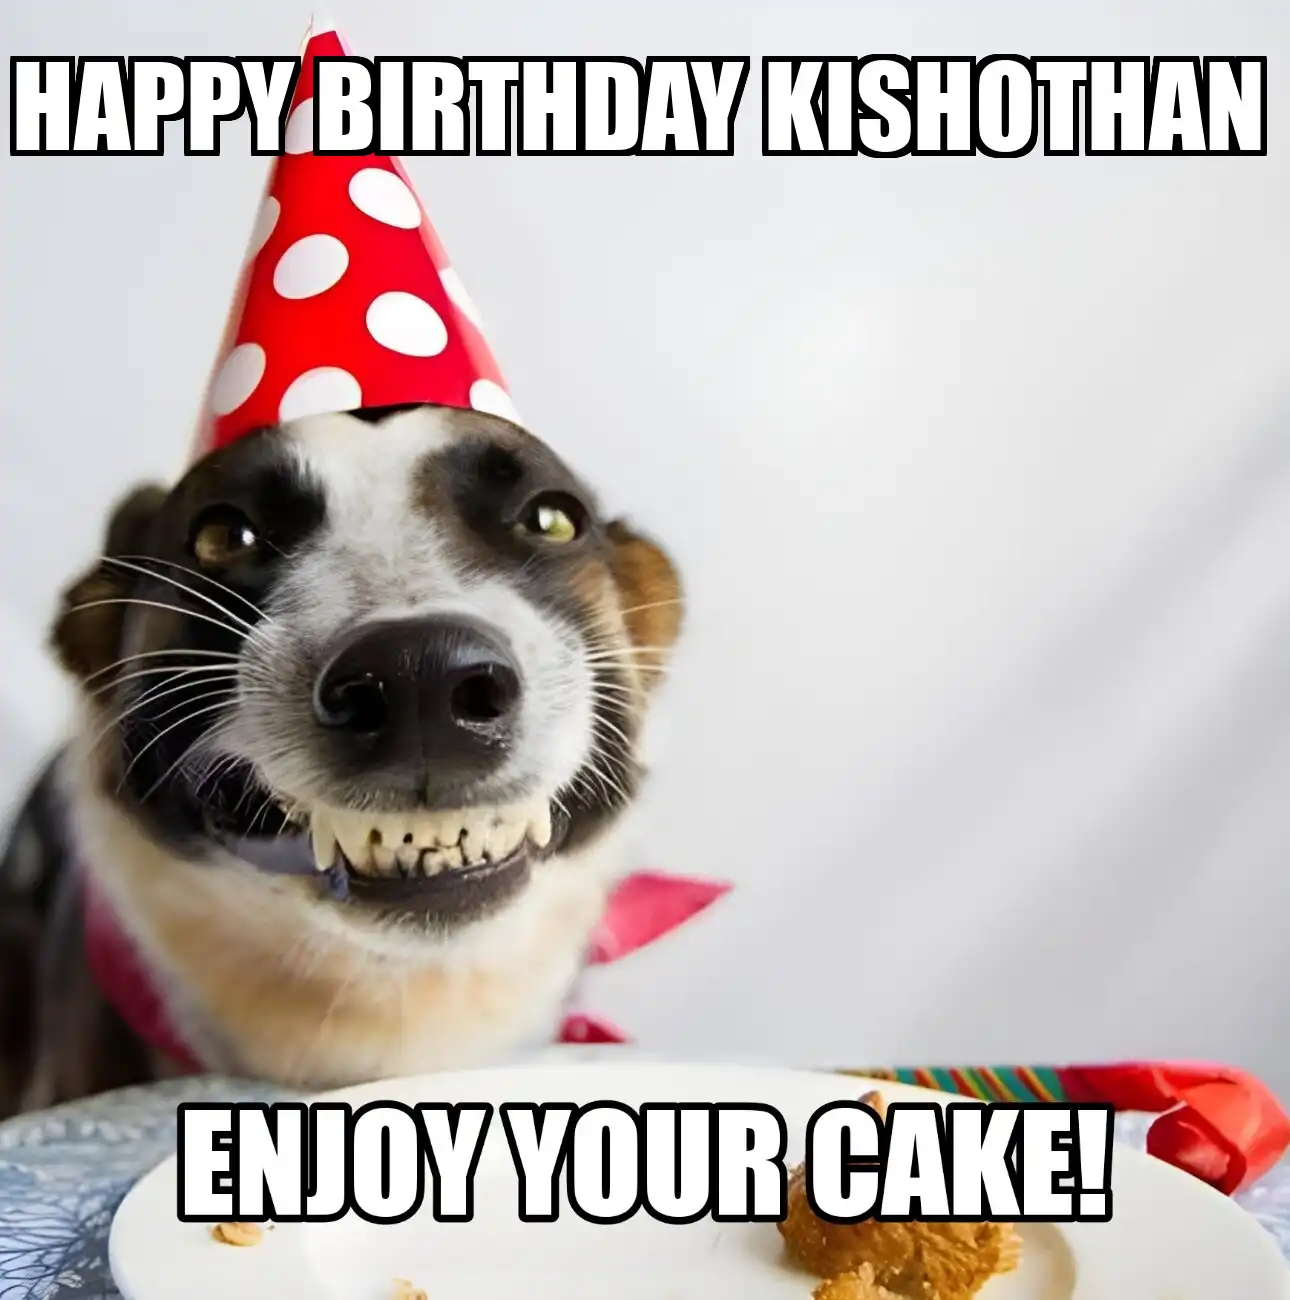 Happy Birthday Kishothan Enjoy Your Cake Dog Meme